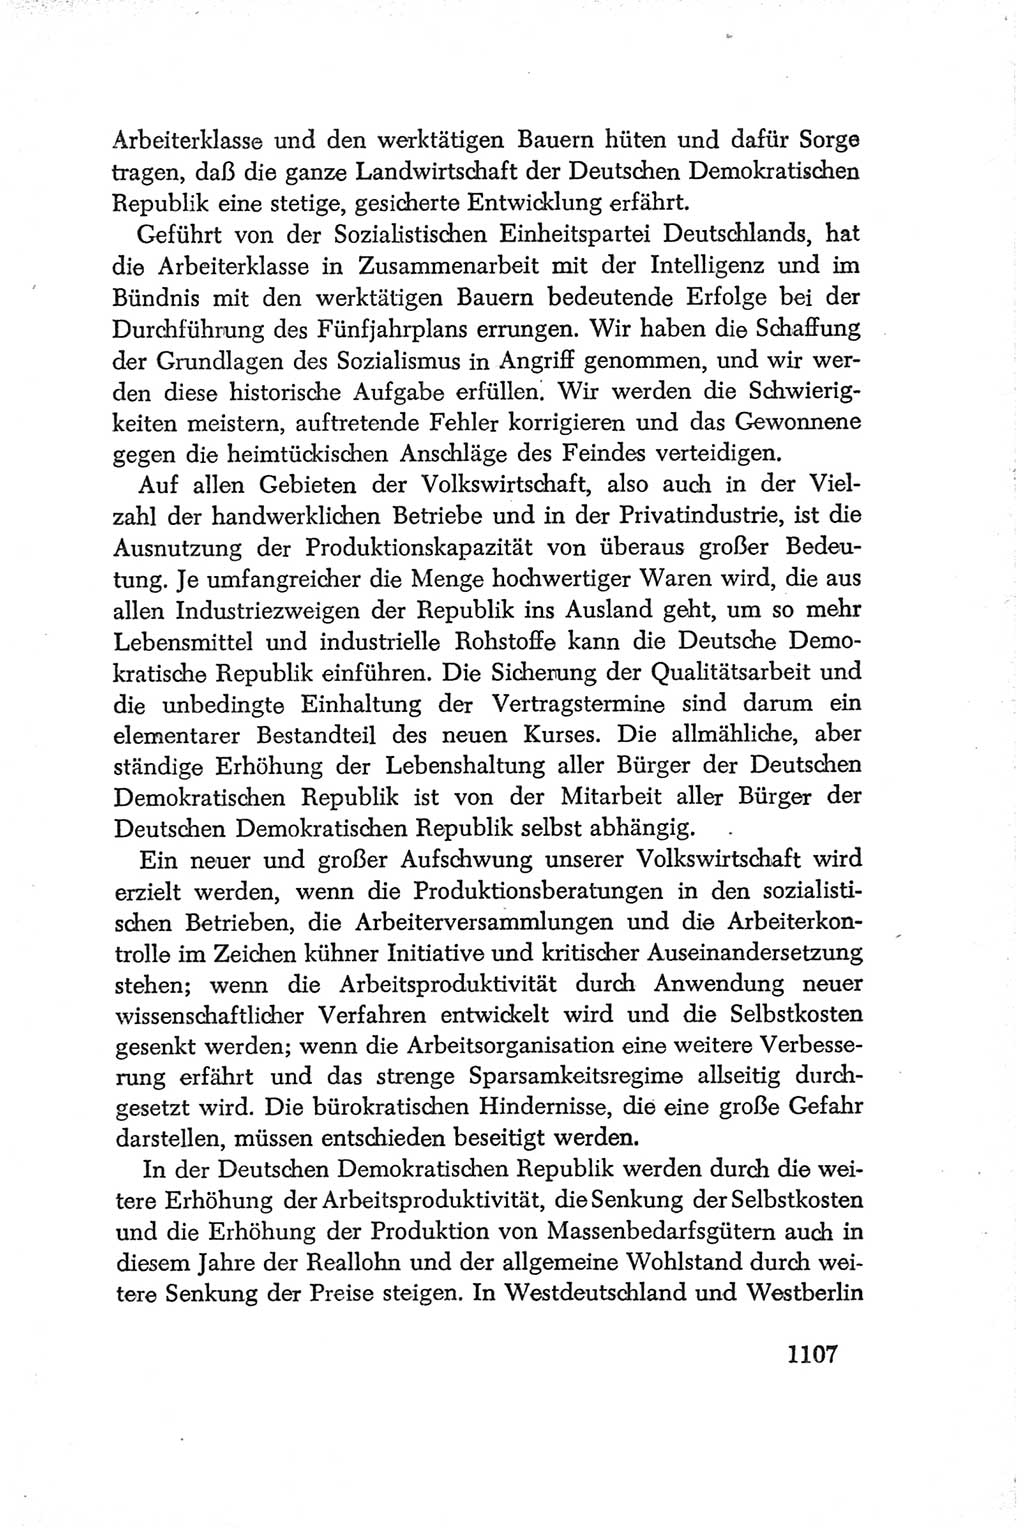 Protokoll der Verhandlungen des Ⅳ. Parteitages der Sozialistischen Einheitspartei Deutschlands (SED) [Deutsche Demokratische Republik (DDR)] 1954, Seite 1107